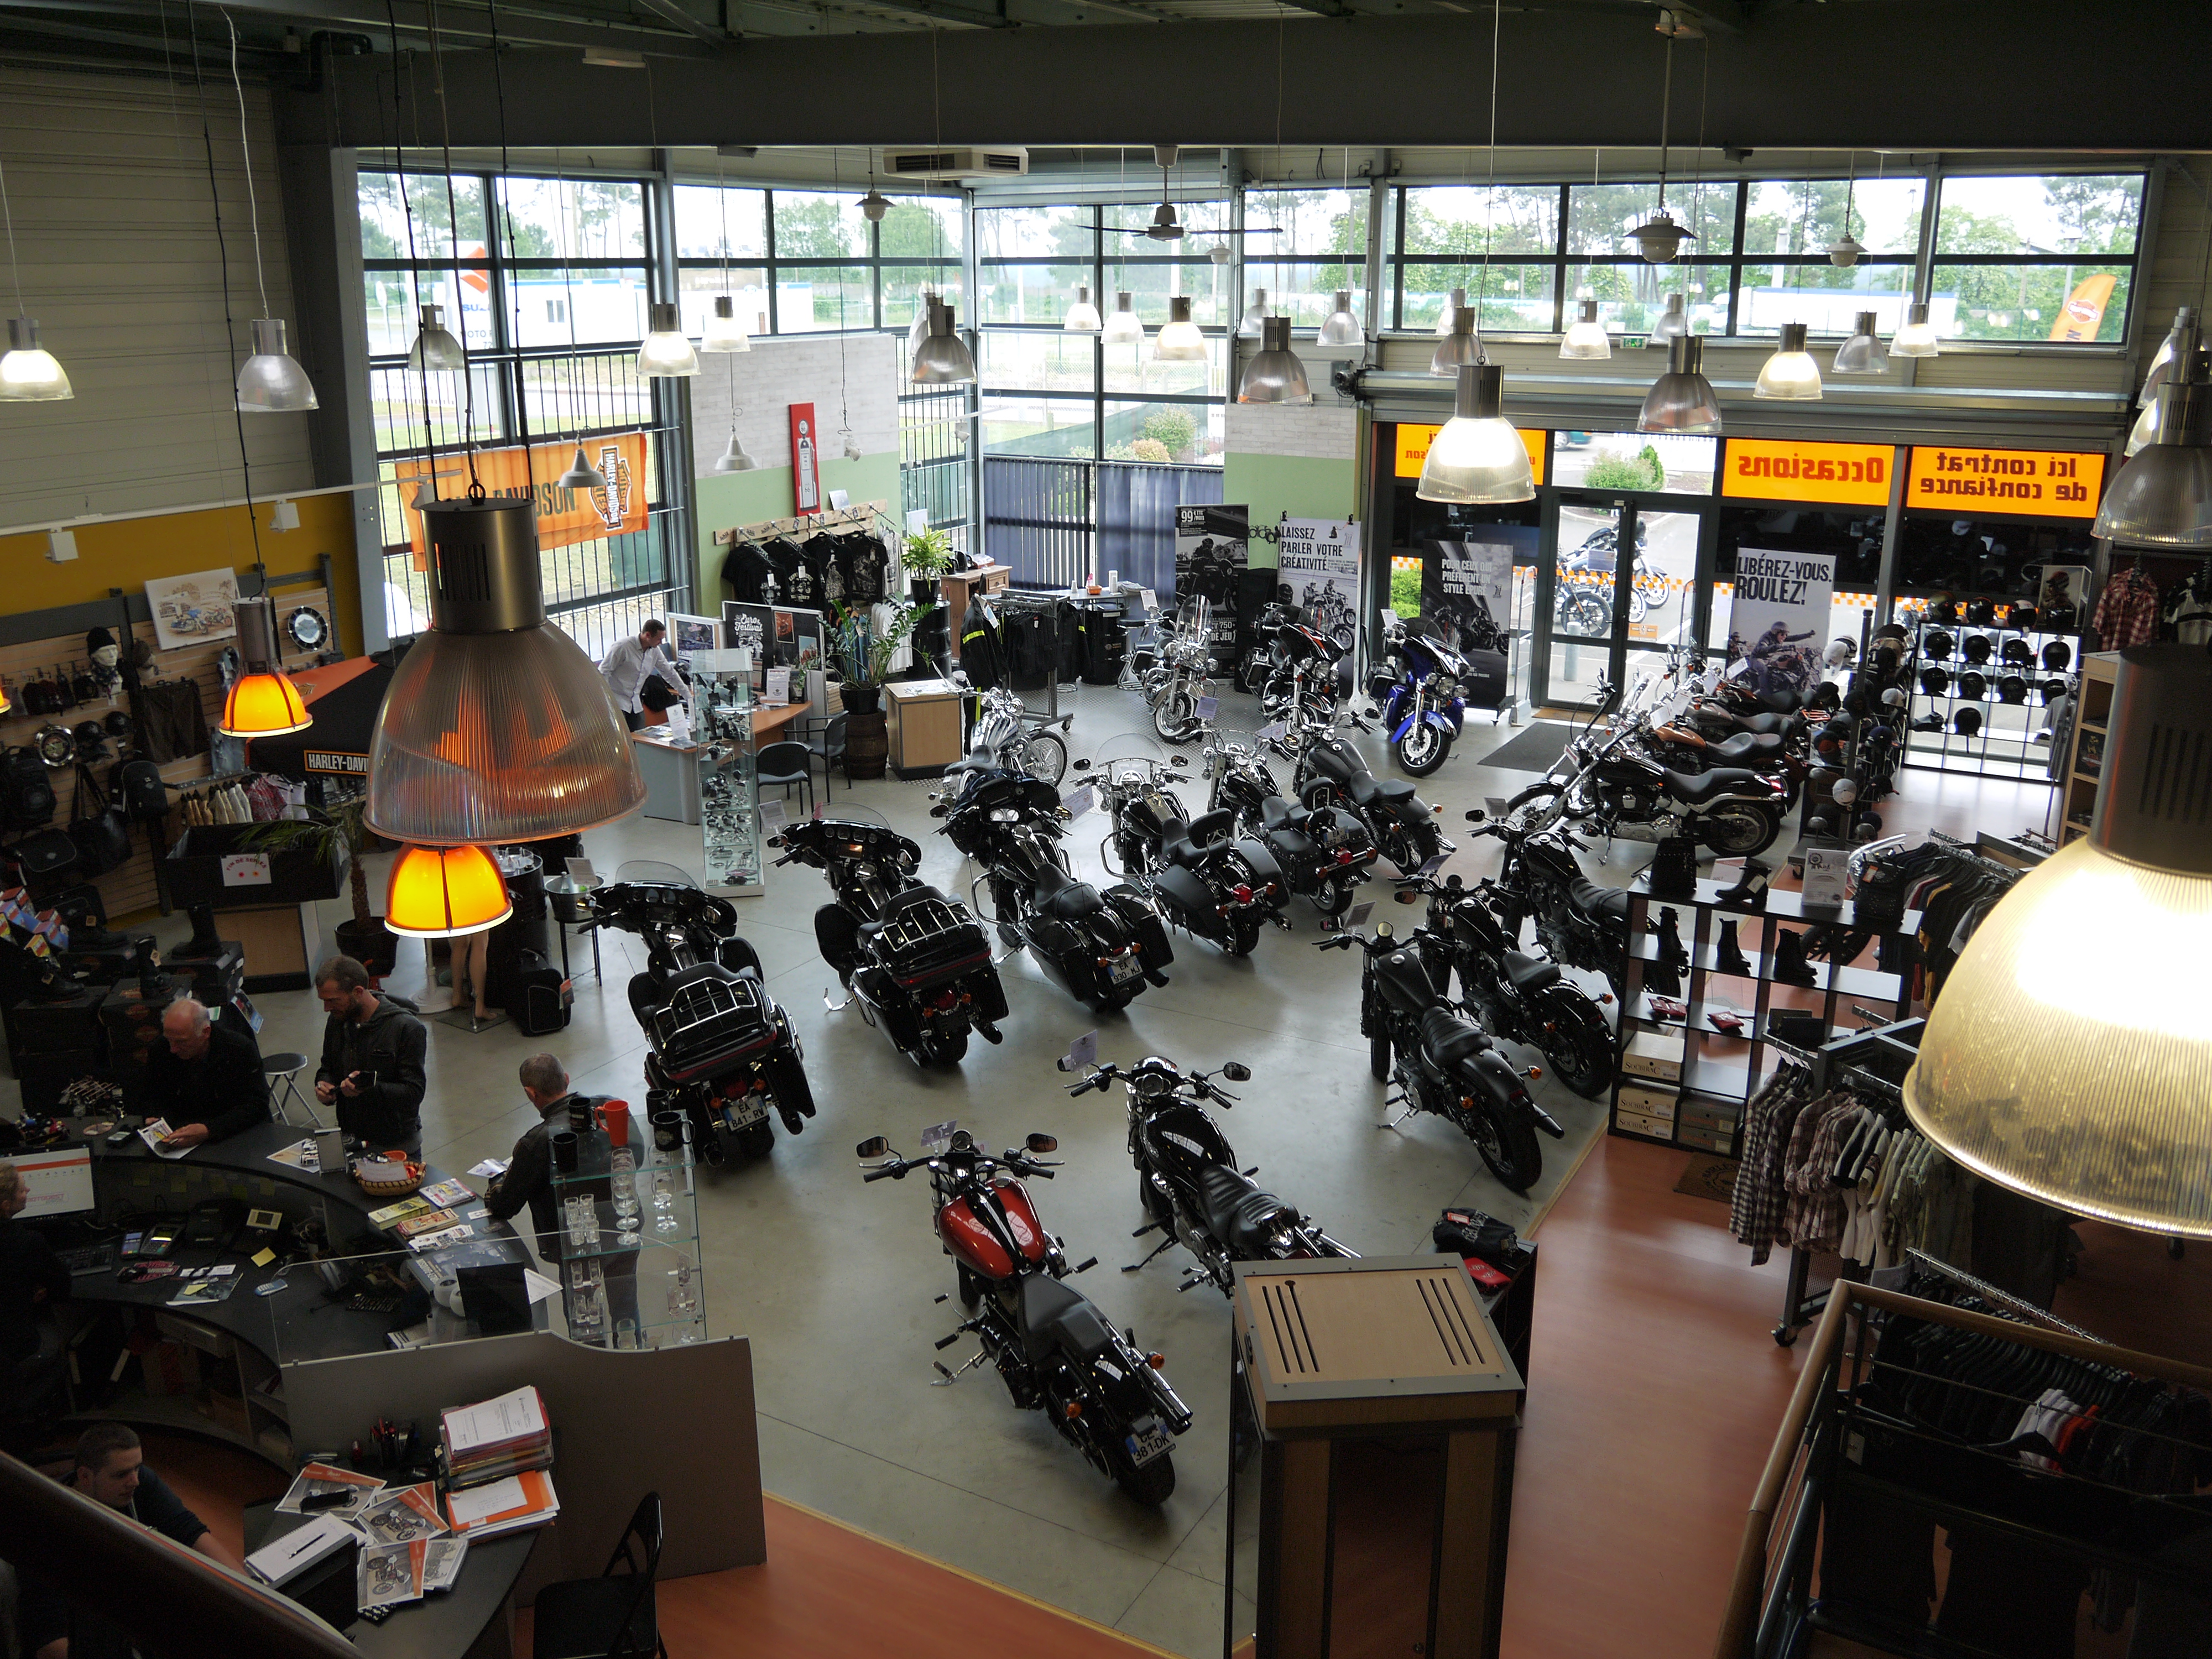 Harley-Davidson Le Mans - Denver's Garage